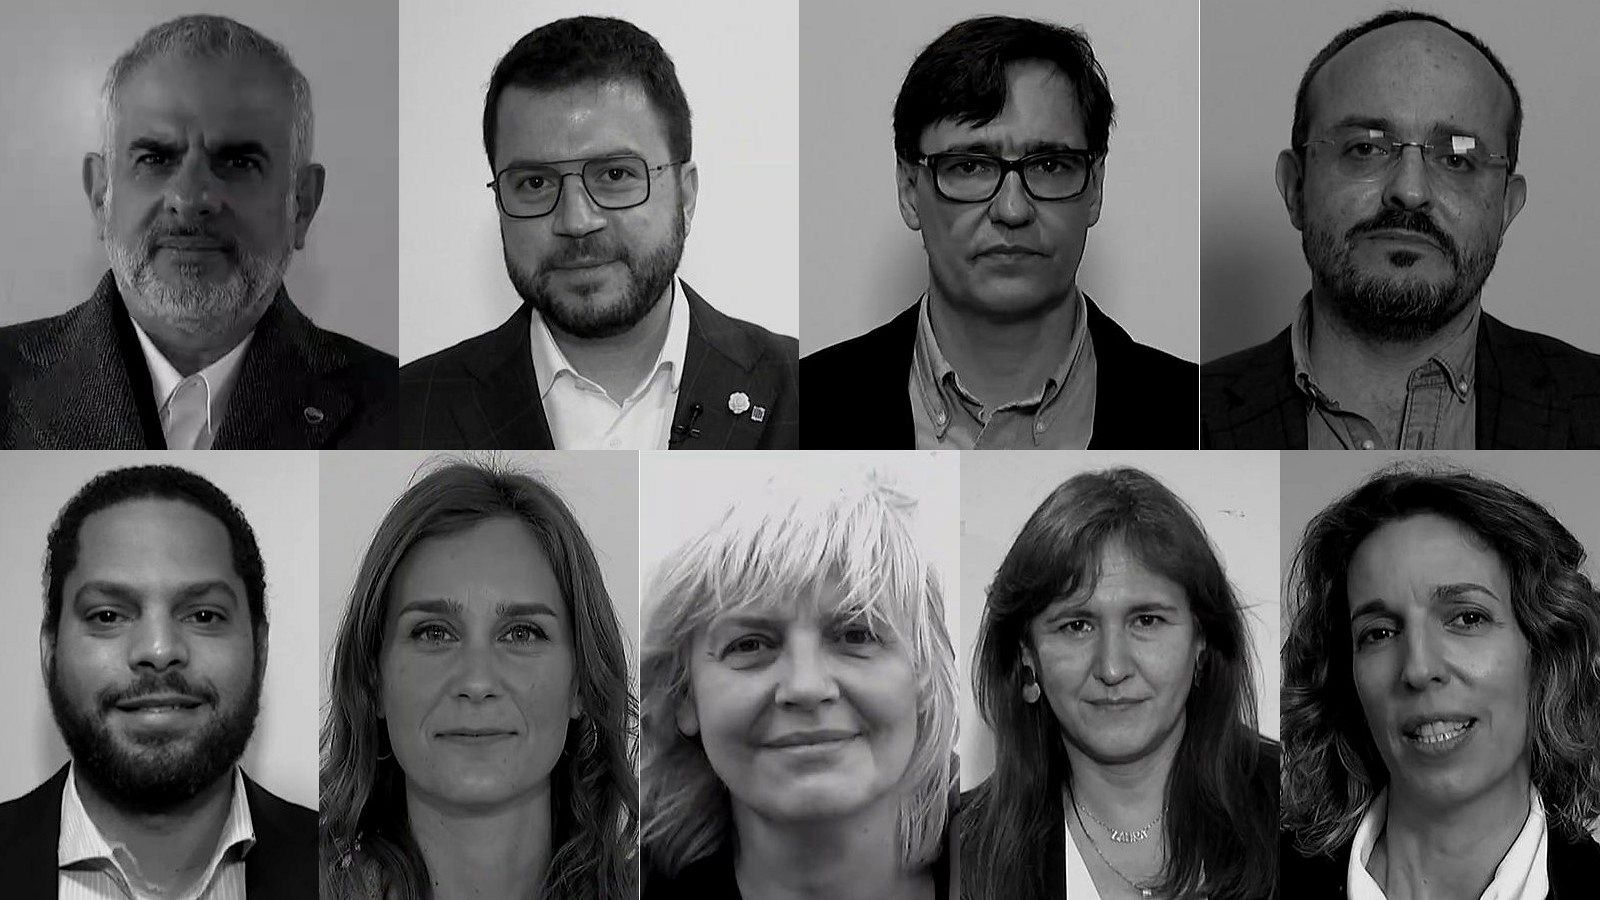 Elecciones catalanas 2021: Cuestionario rápido a los candidatos